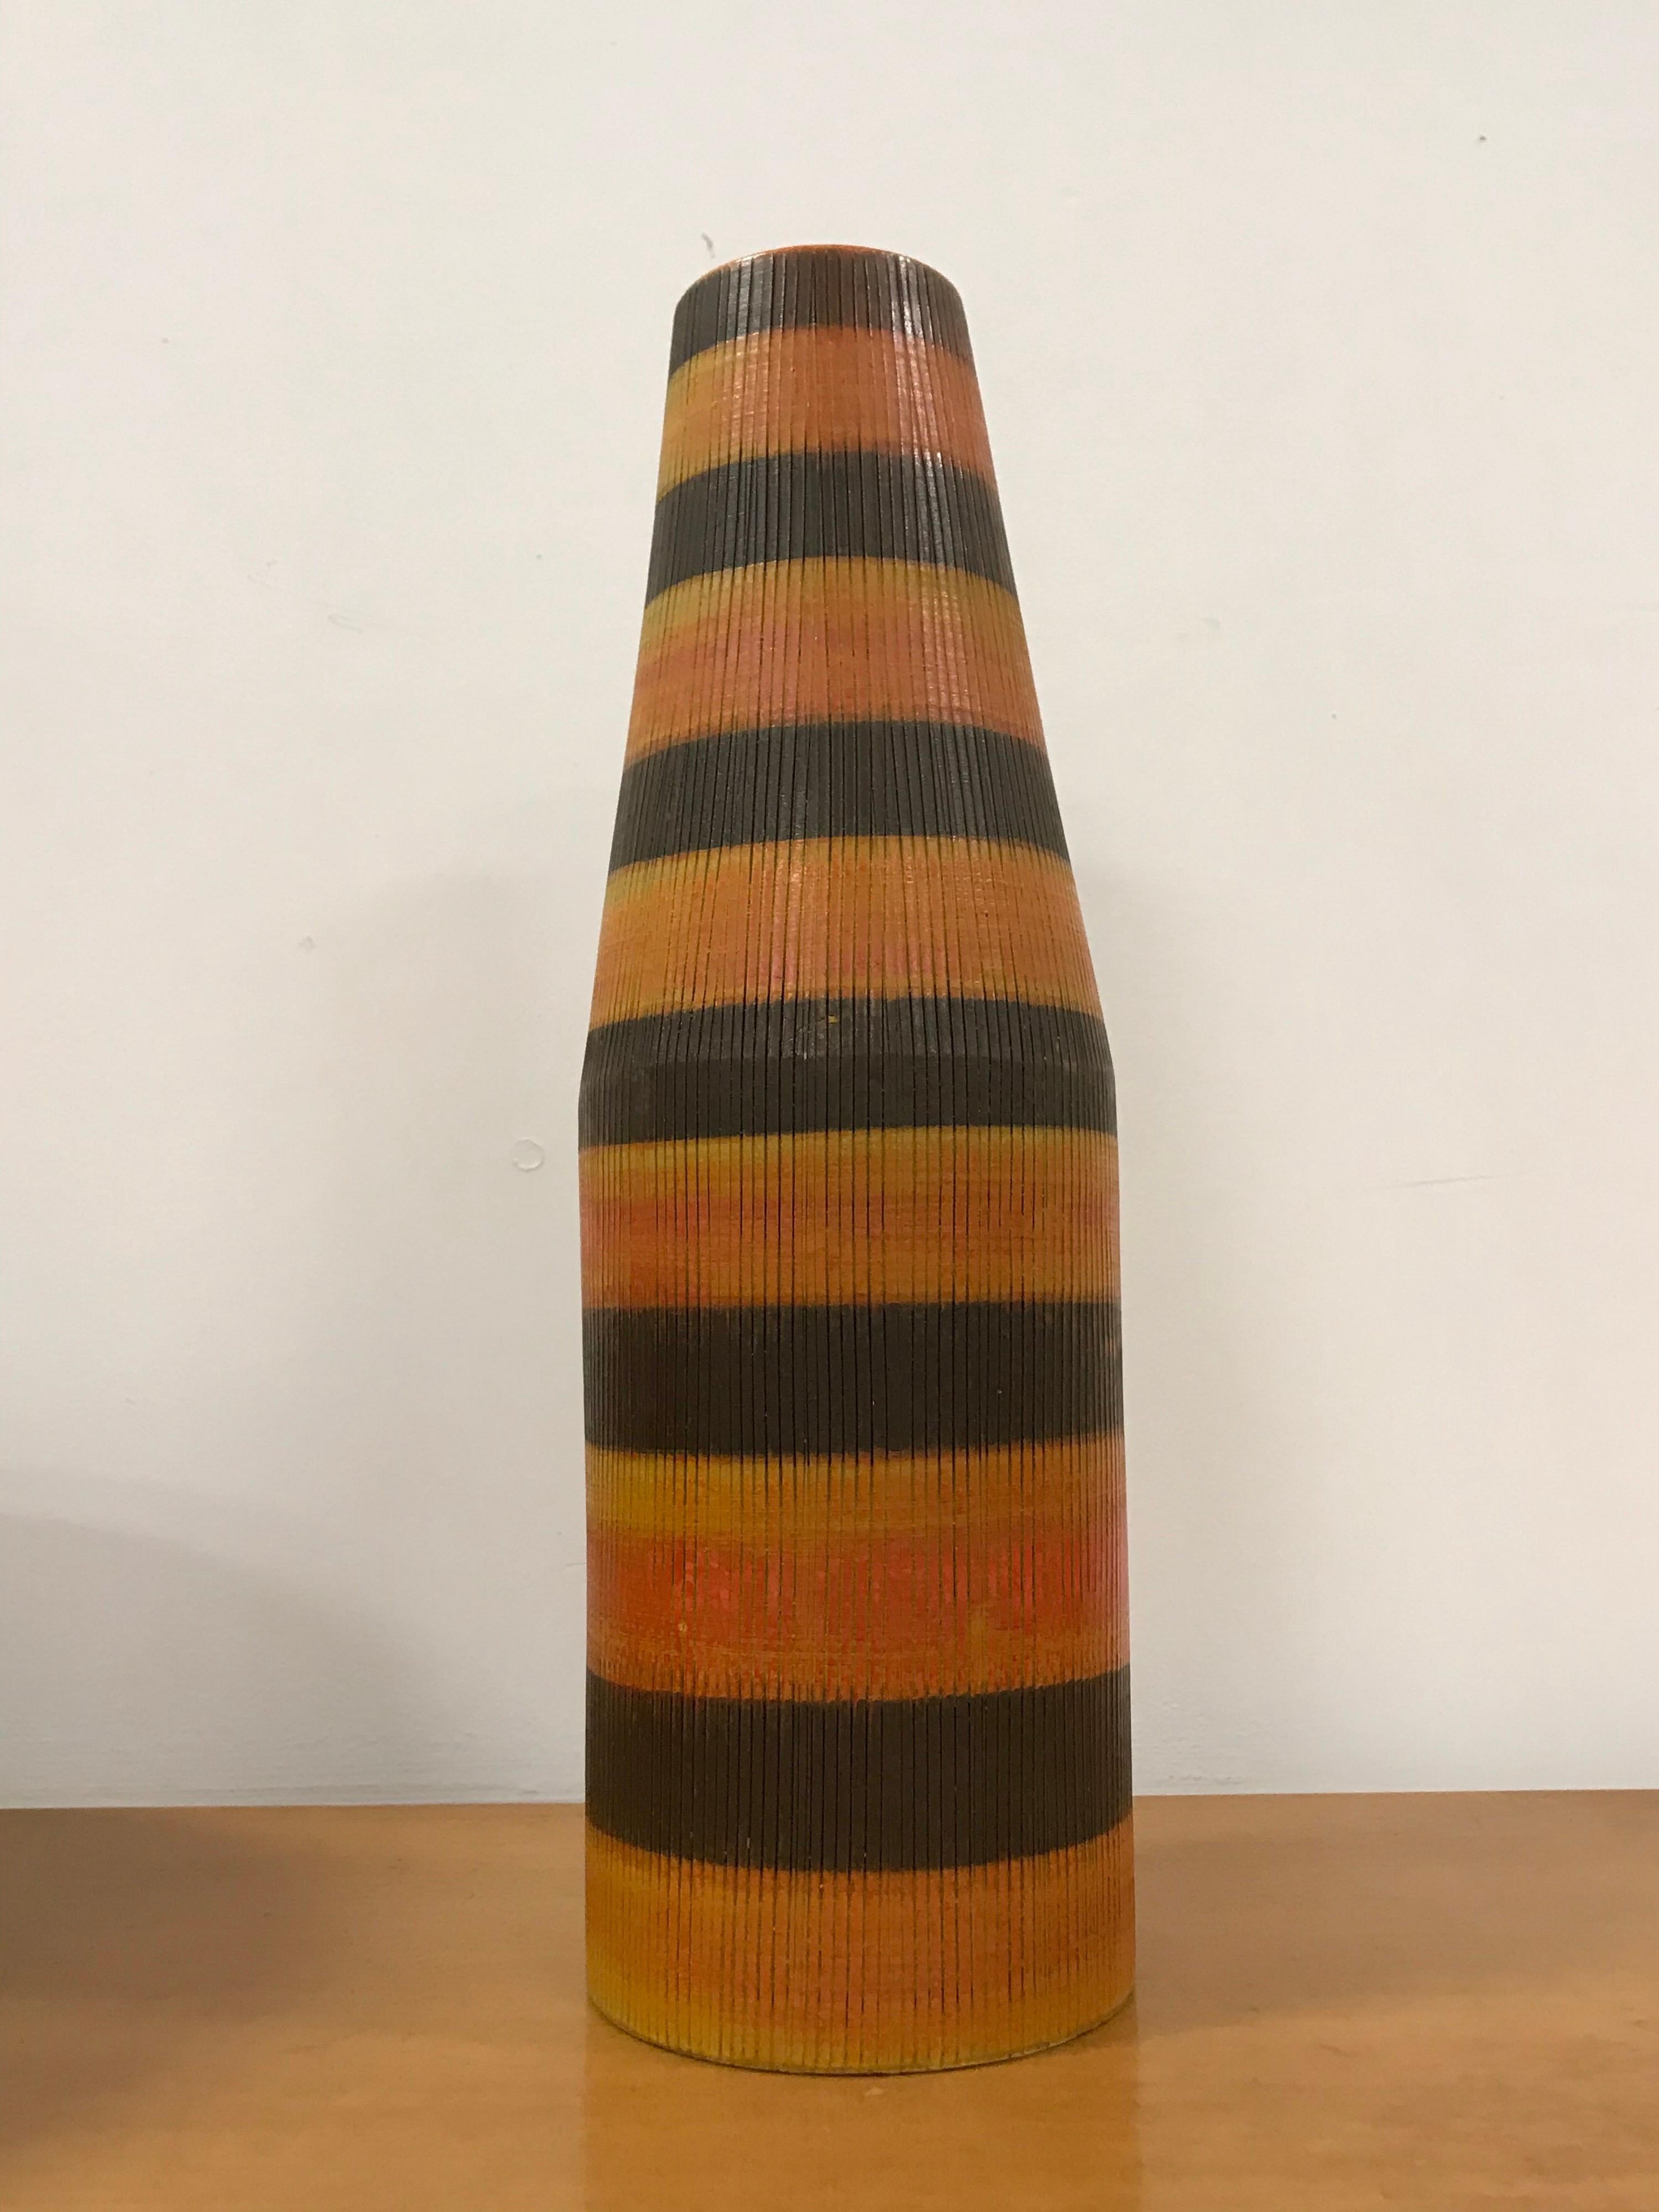 Superbe grand vase conçu par Aldo Londi pour Bitossi, avec un motif de seta dans les rares couleurs 